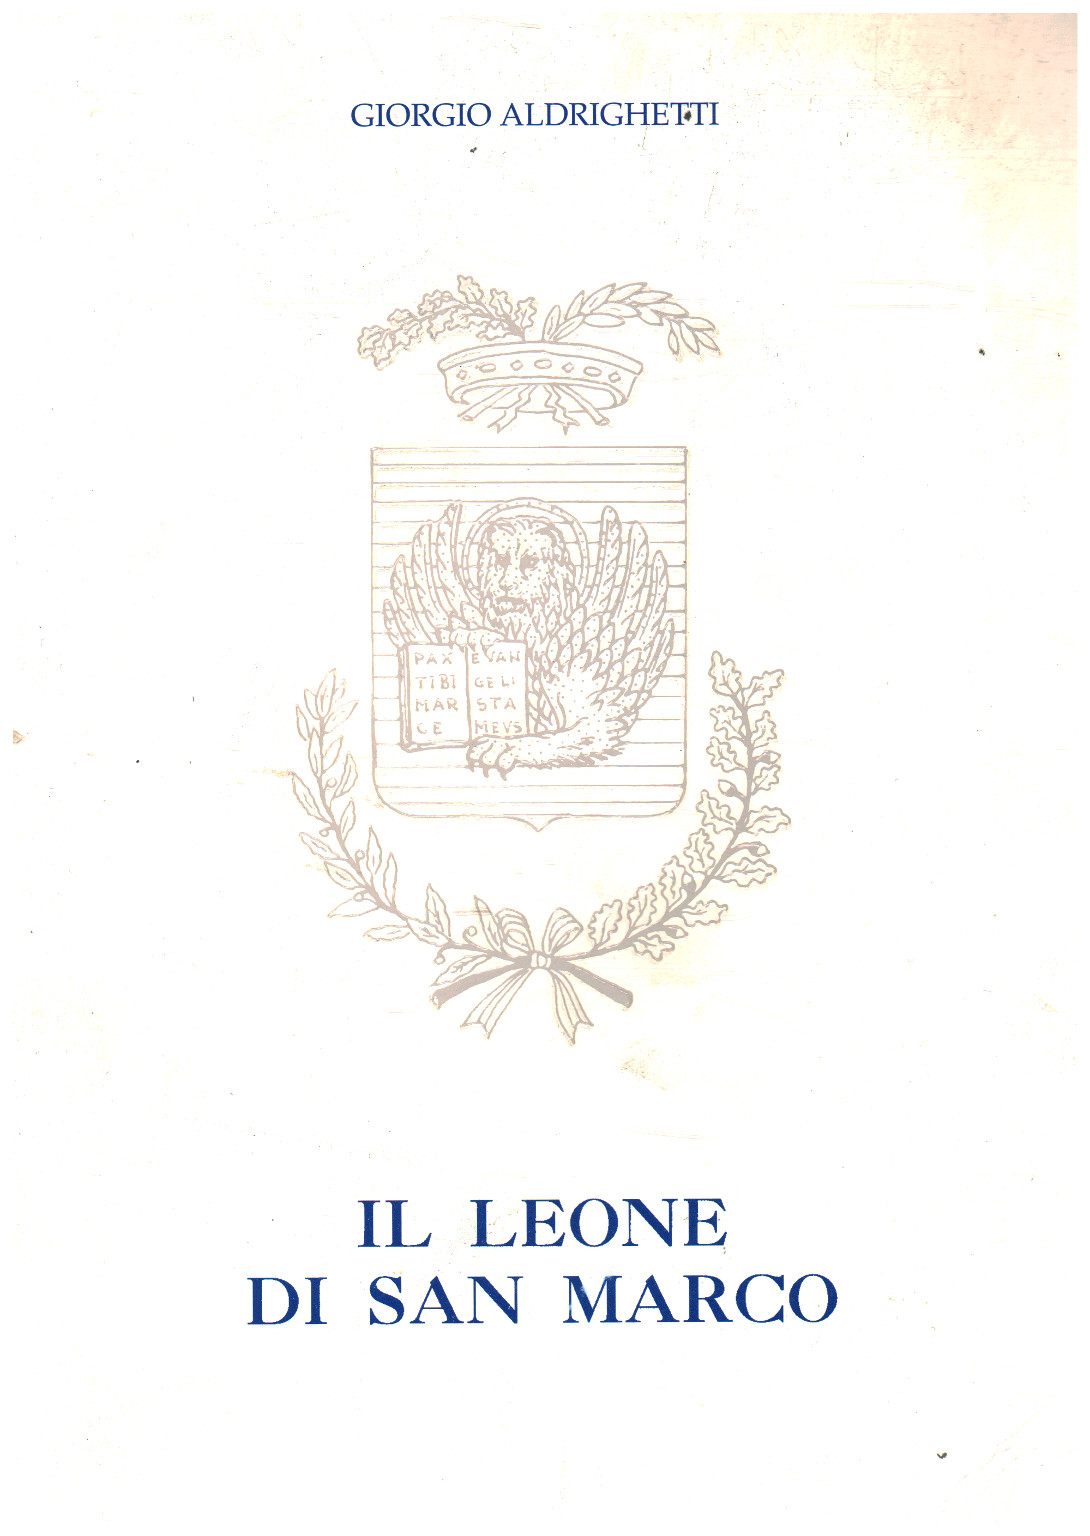 The Lion of San Marco, Giorgio Aldrighetti